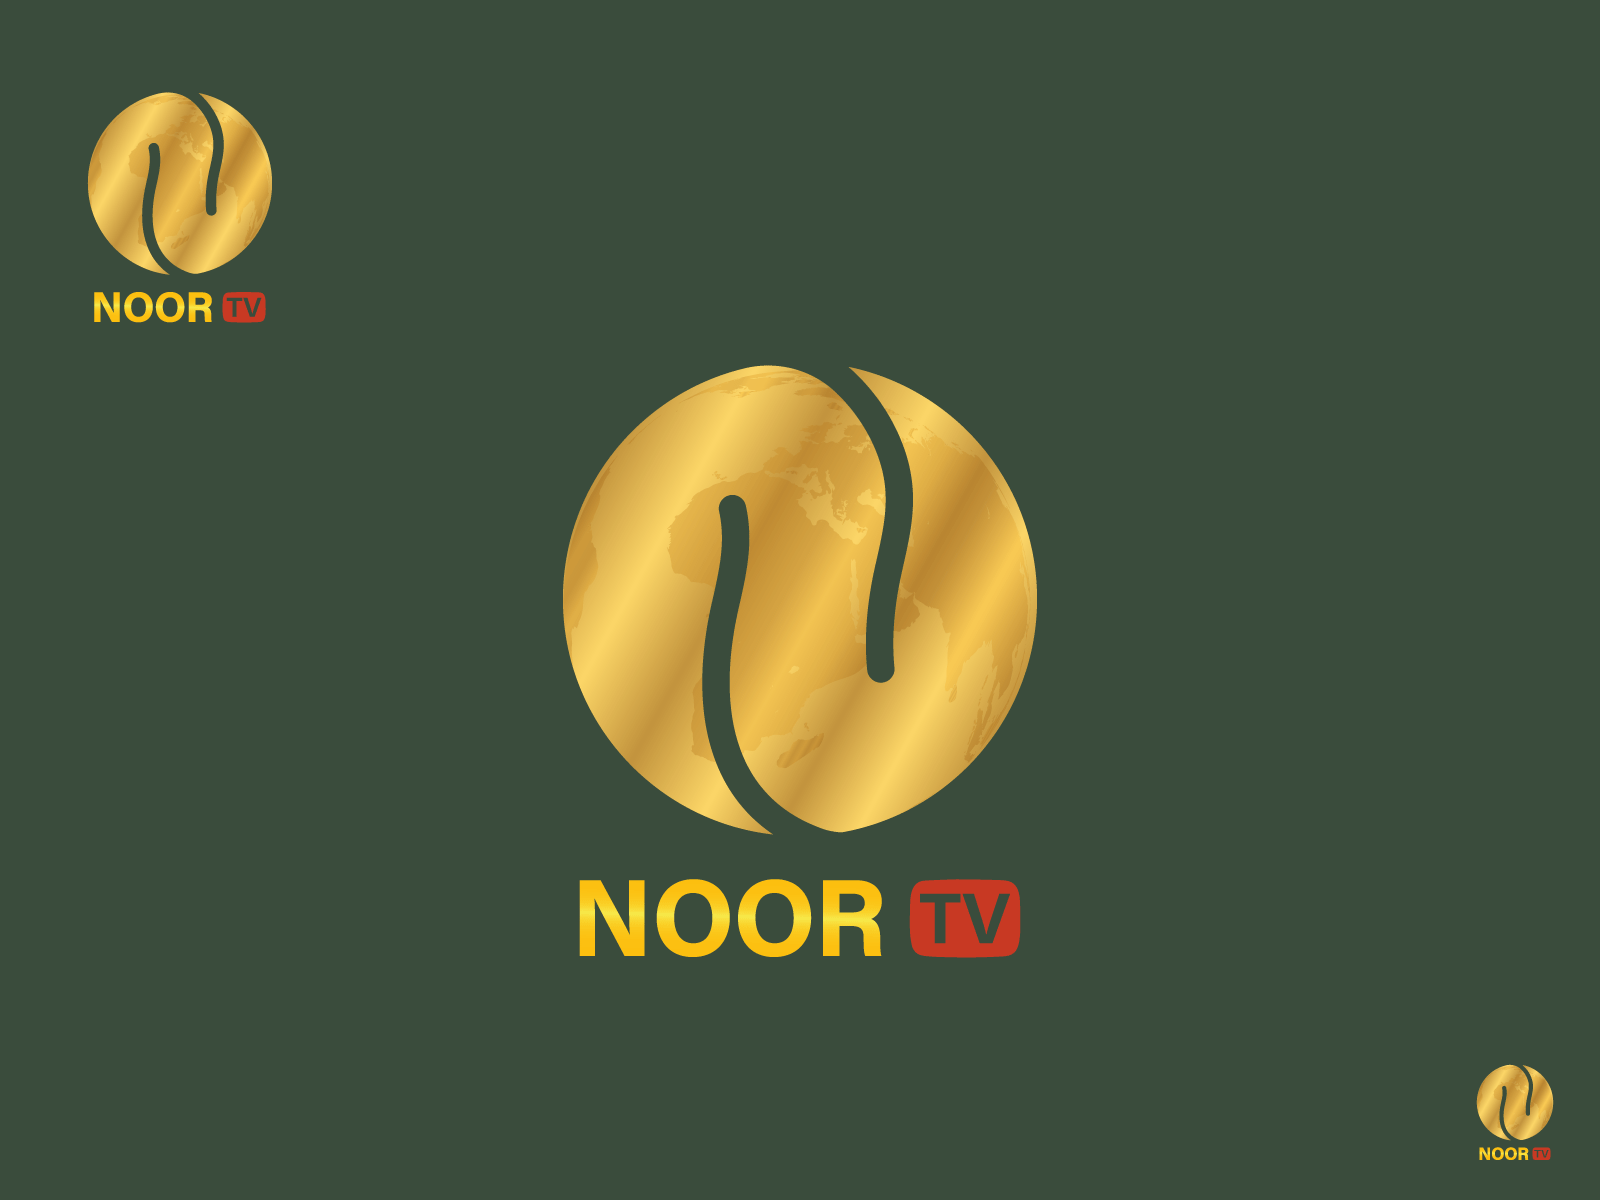 Noor TV brand identity branding icon illustration indentity letter lettermark logo logo design